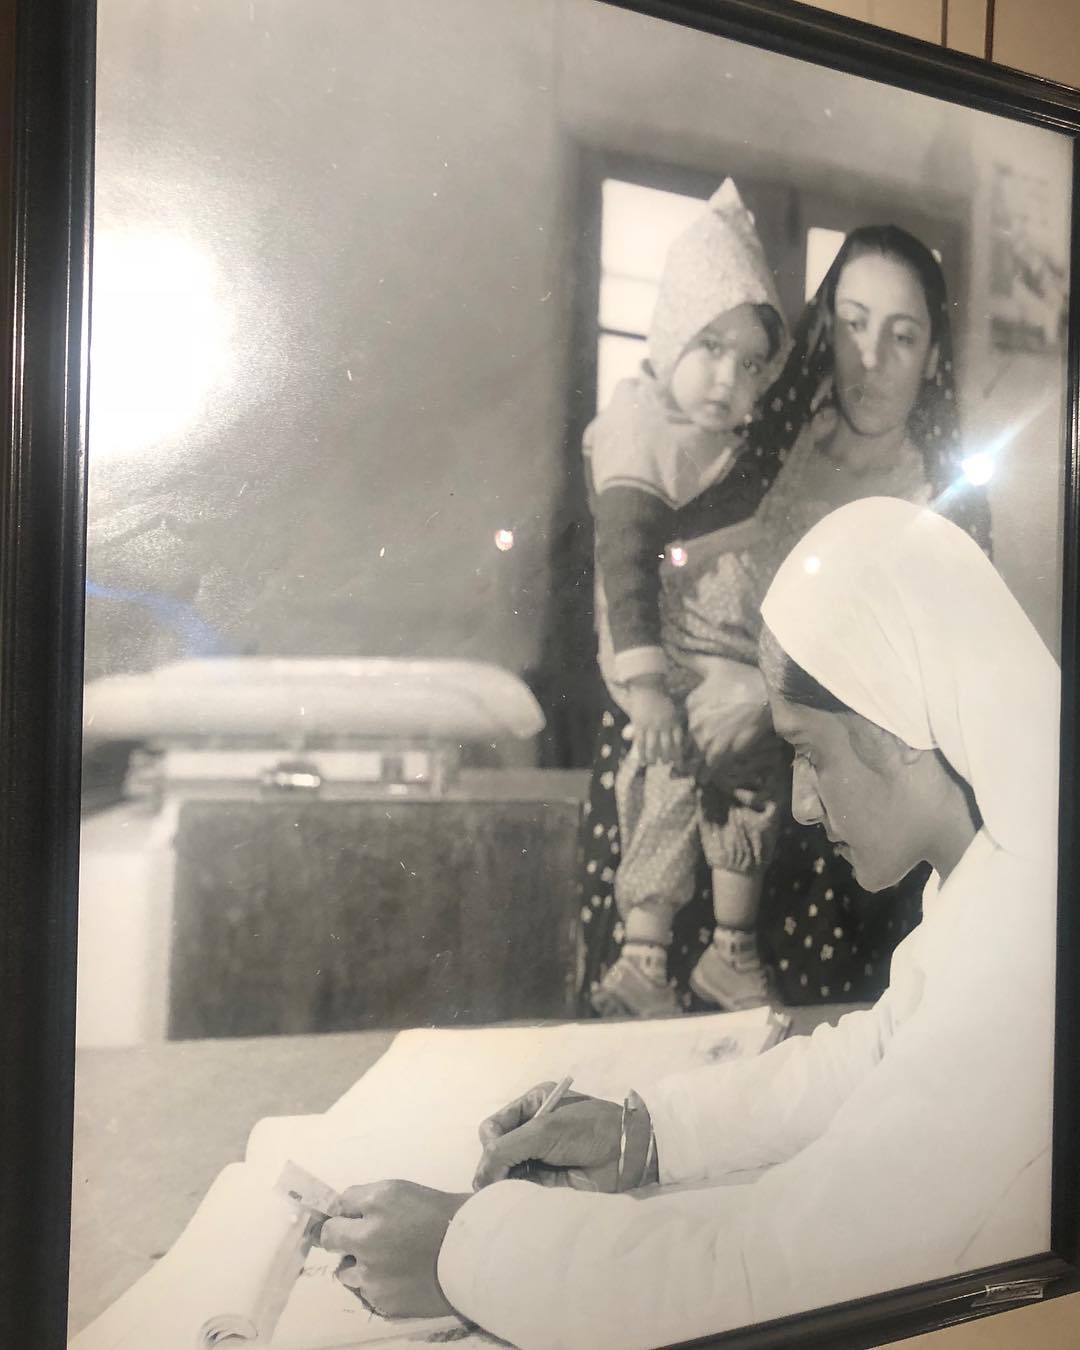 ارائه خدمات درمانی، ۶۰ سال پیش در ایران + عکس